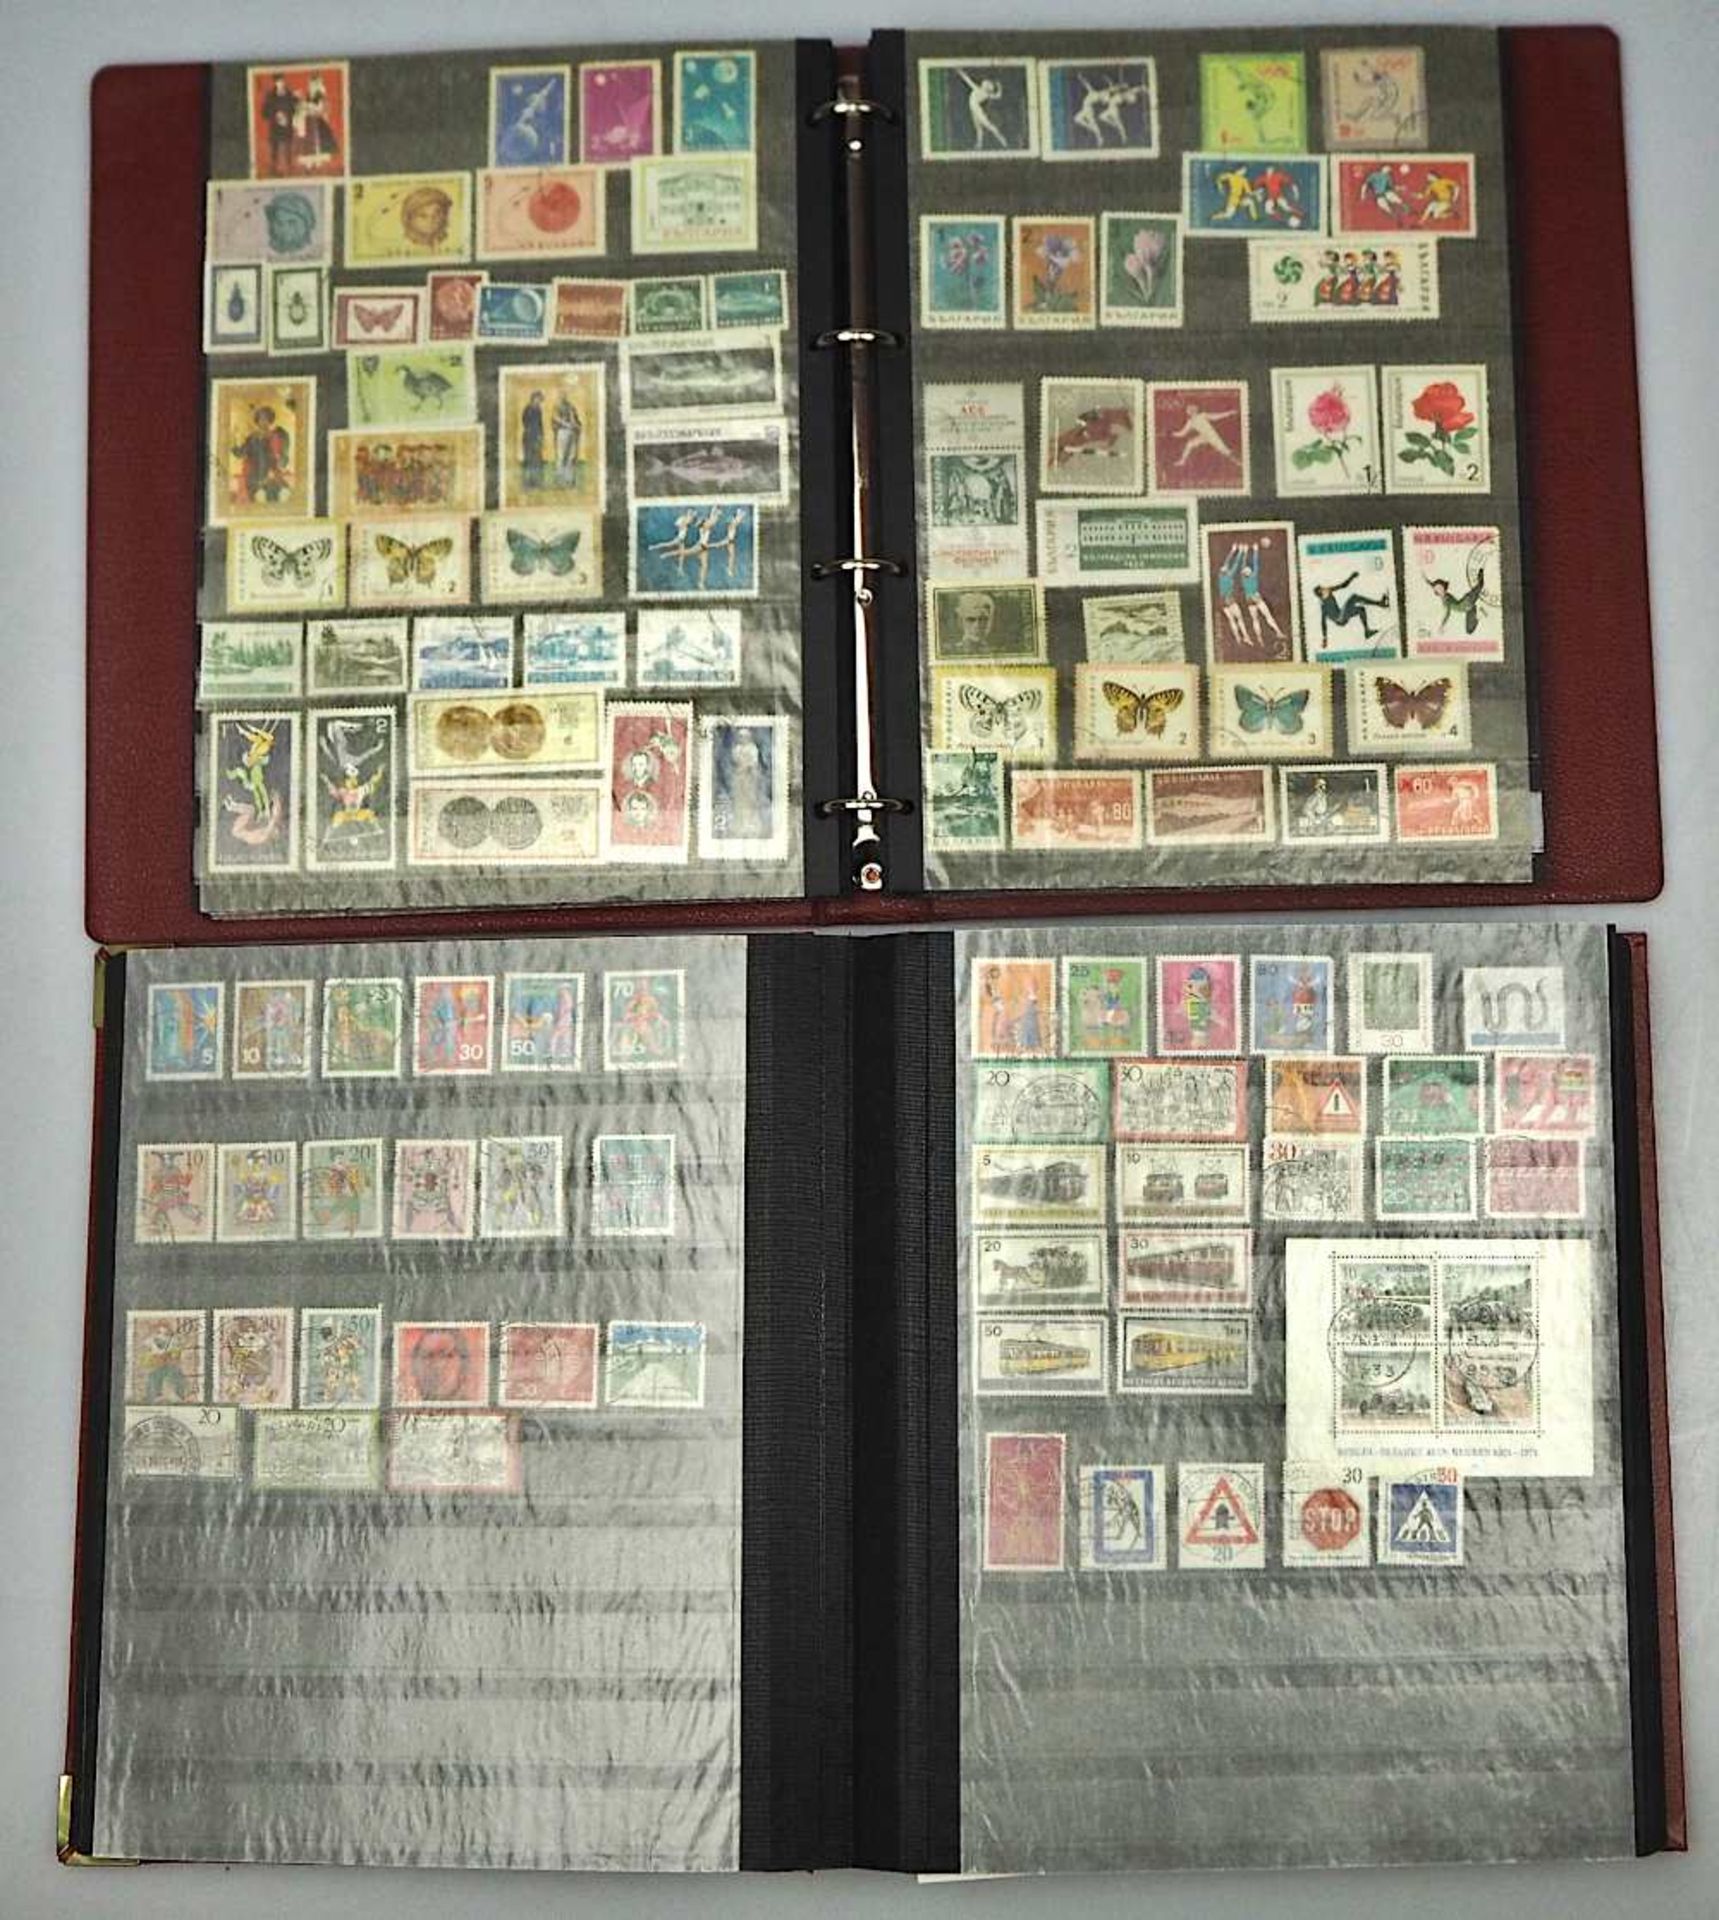 1 Konv. Briefmarken in 4 Alben: Deutsches Reich, BRD, DDR, 3. Reich, Alle Welt sowie 1 - Bild 3 aus 3